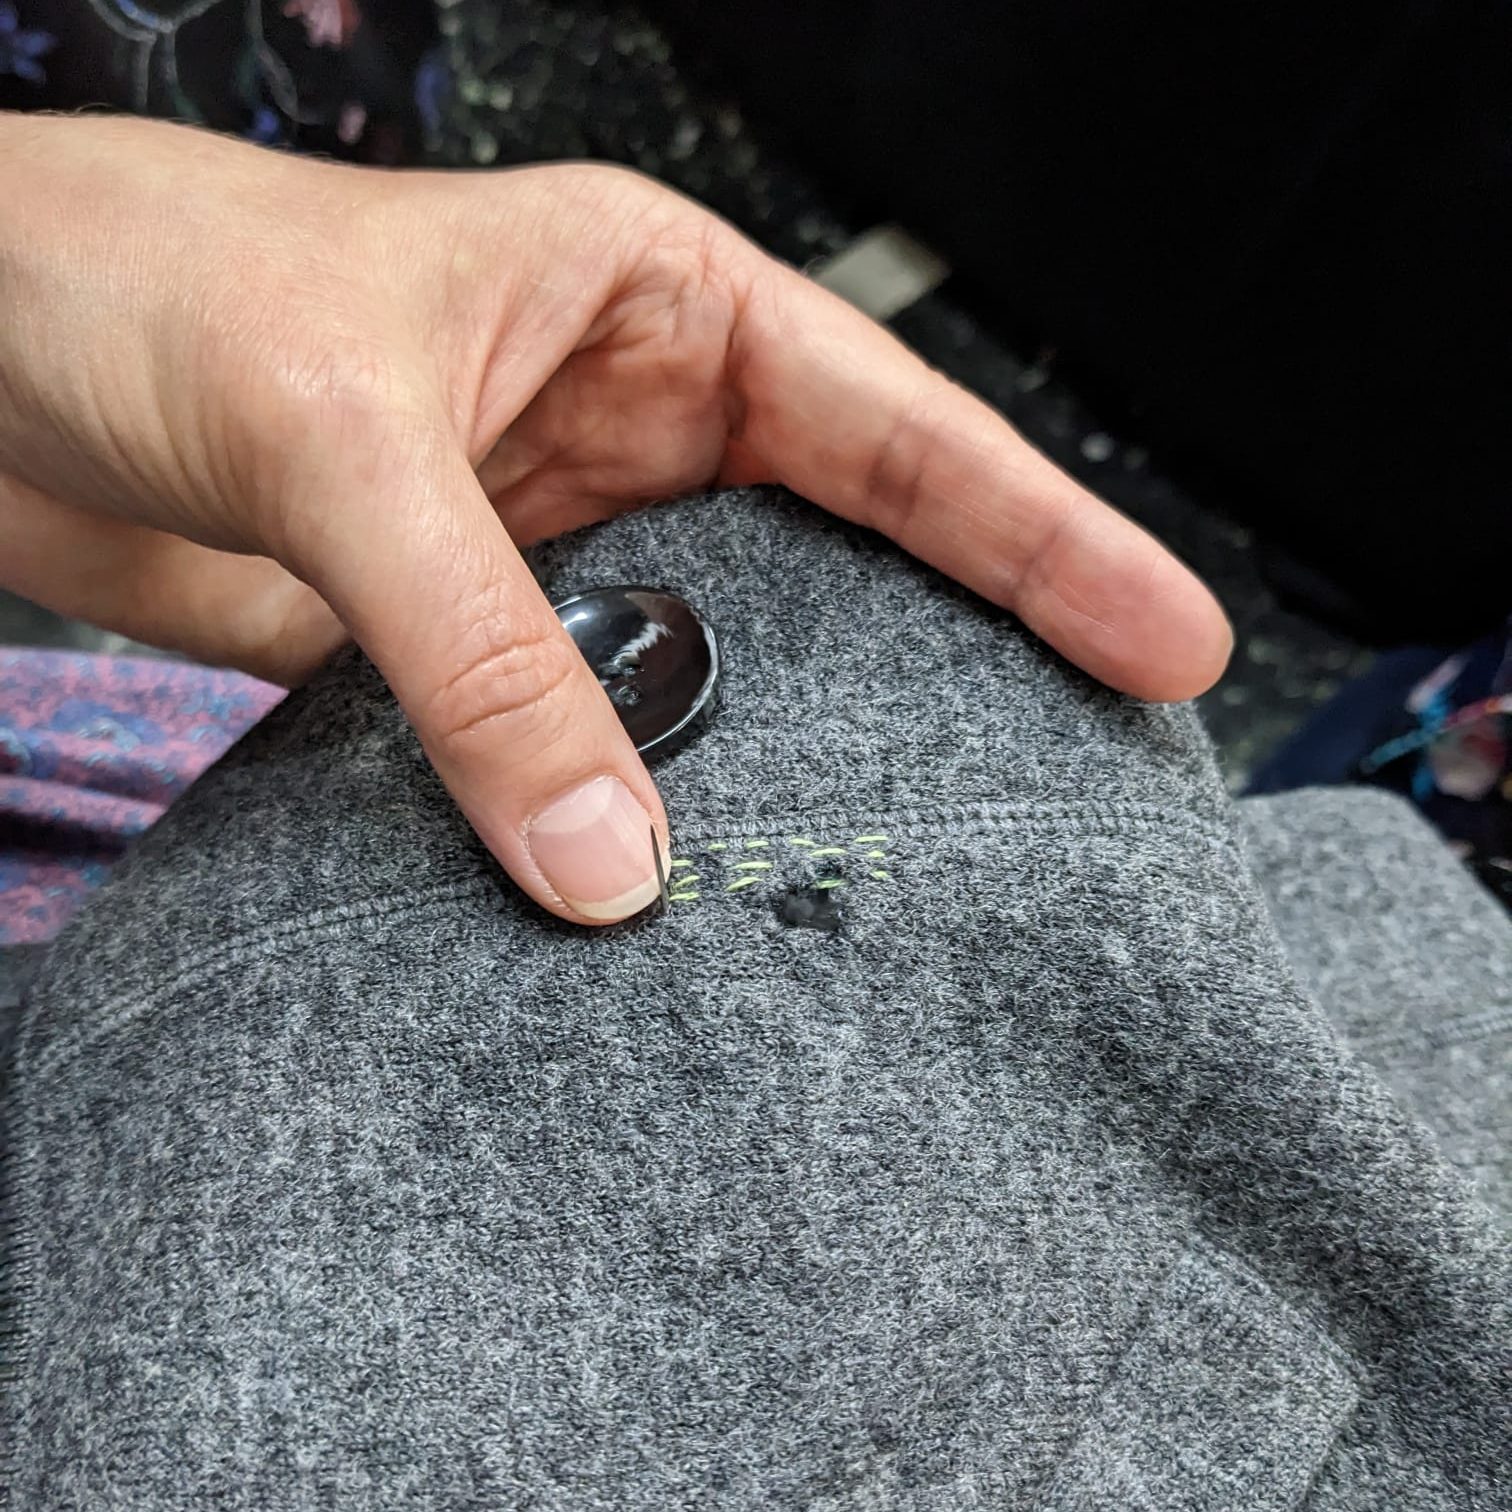 Mending a woolen cardigan hole